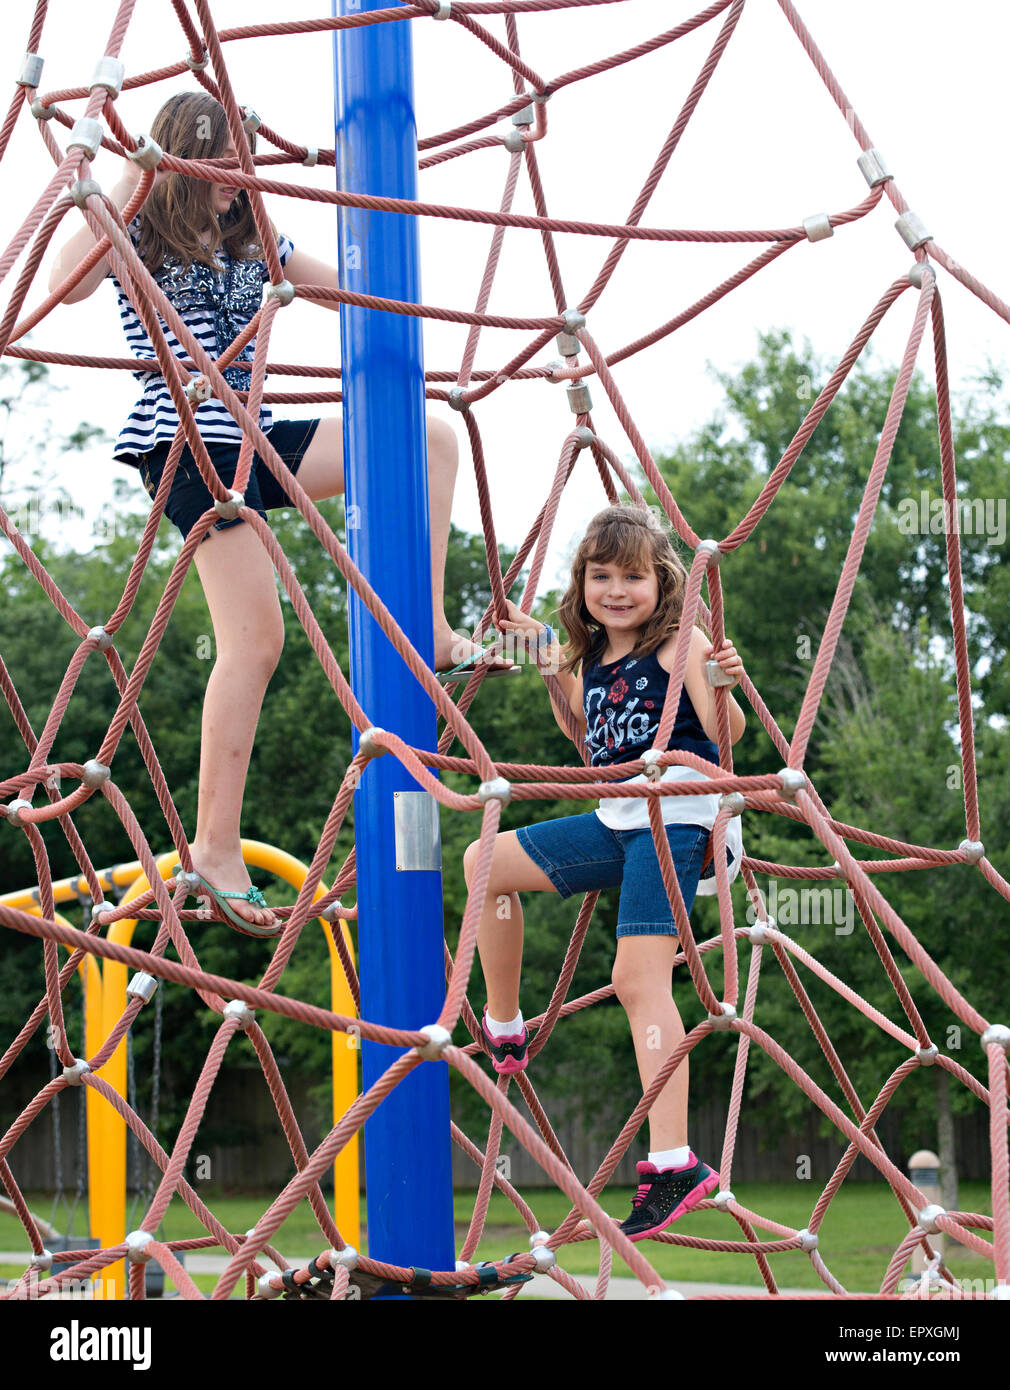 Les jeunes filles jouent sur l'aire de jeux extérieure marylin park Banque D'Images